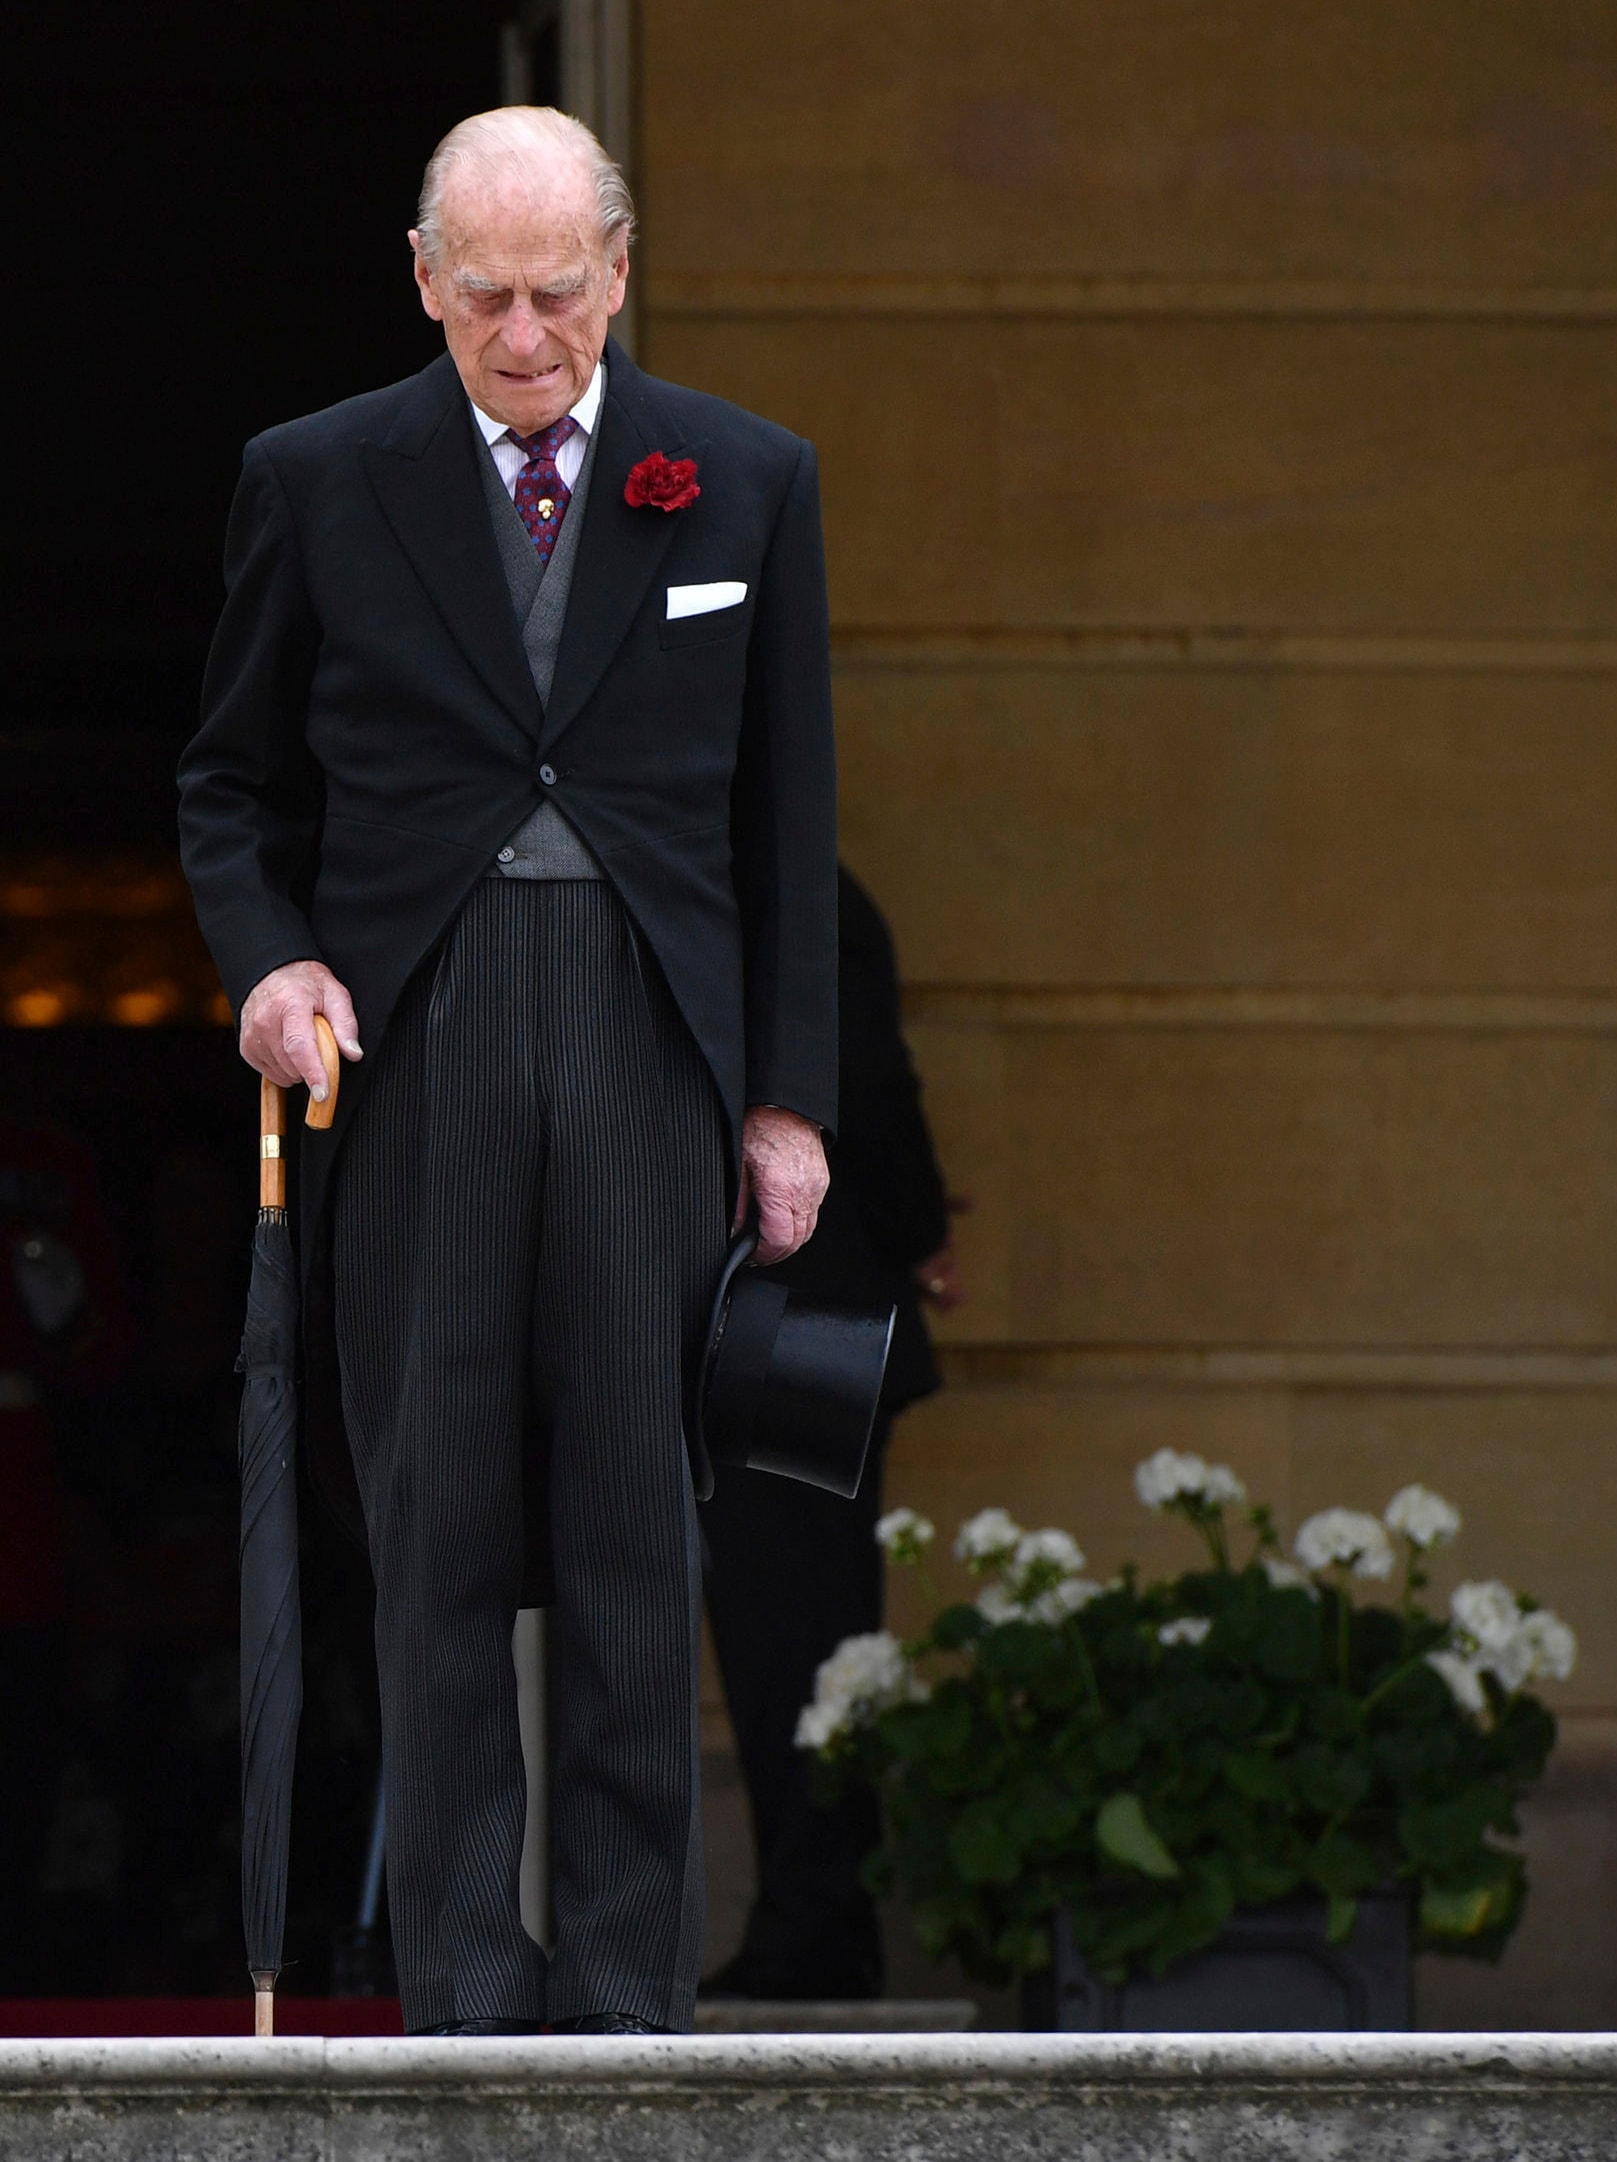 Filippo duca di Edimburgo in un'immagine del 2017